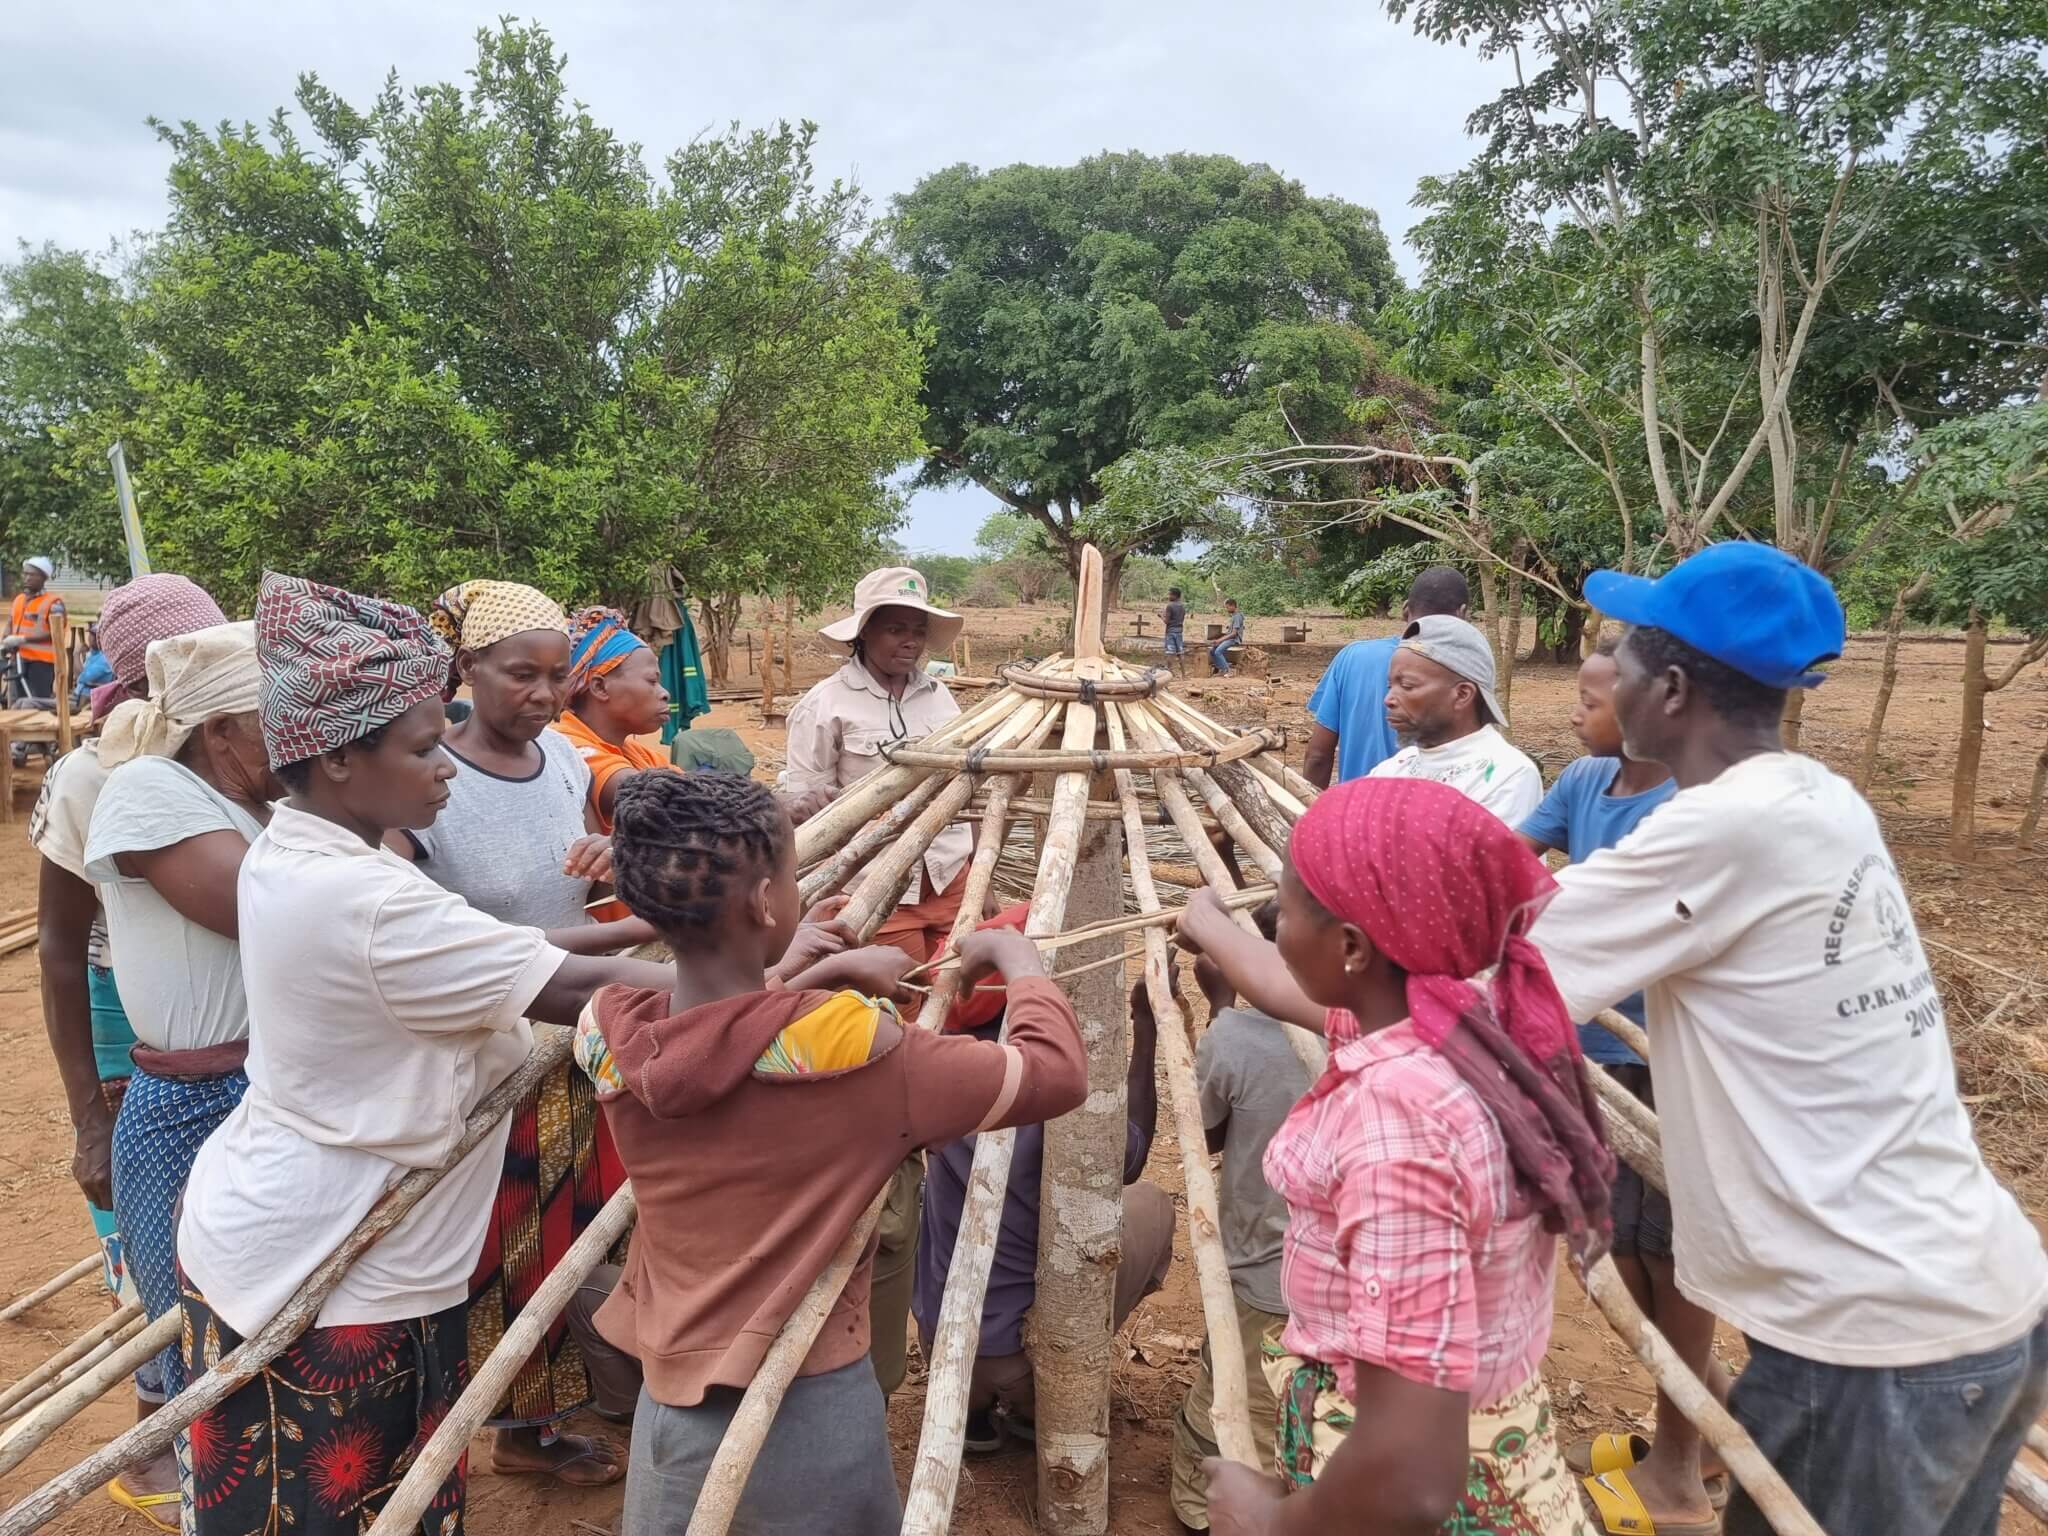 Bei einer Schulung in Mosambik wird ein barrierefrei zugängliches Lagerhaus gebaut. Männer und Frauen mit Behinderungen bauen gemeinsam die Dachkonstruktion (c) Graca Maria Folege.